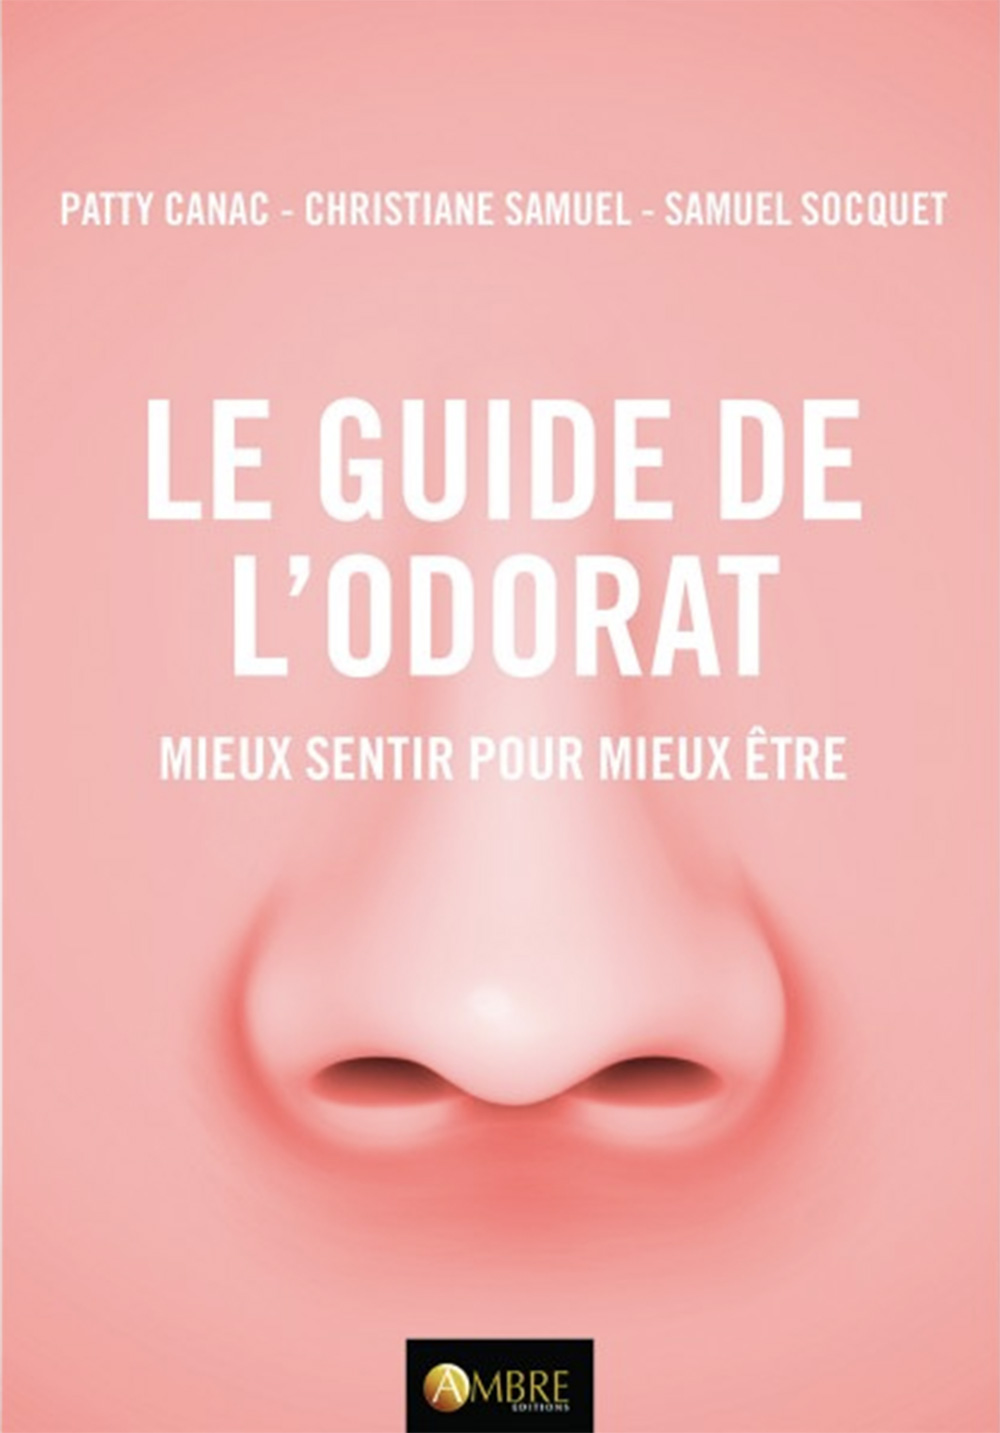 « Le Guide de l’odorat. Mieux sentir pour mieux être », de Patty Canac, Christiane Samuel et Samuel Socquet